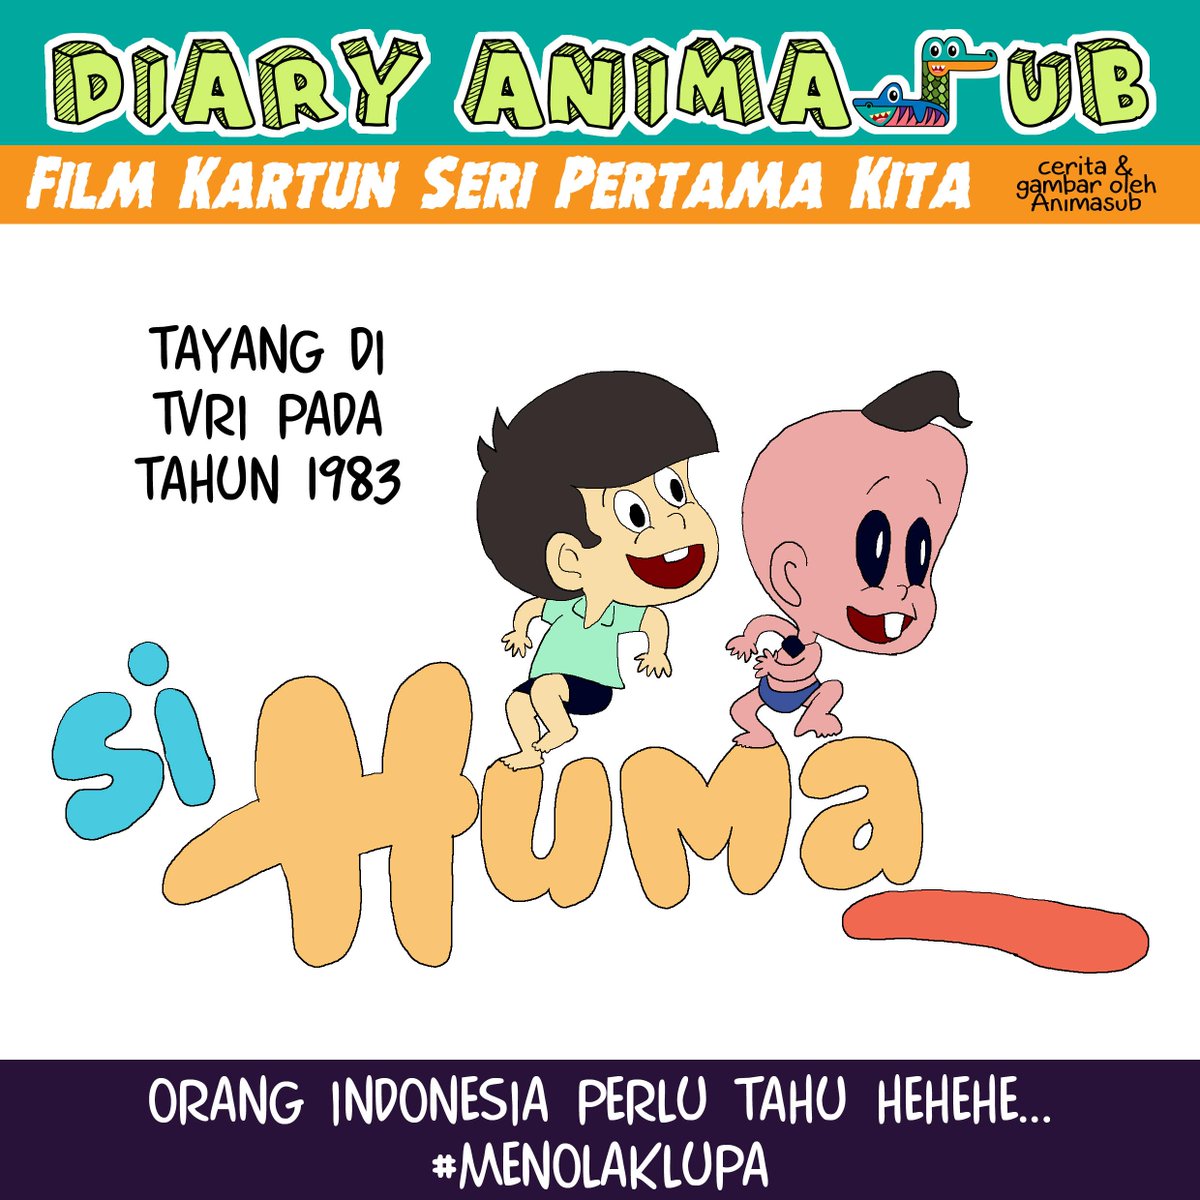 Animasi Surabaya On Twitter Si Huma Adalah Film Kartun Seri Pertama Indonesia DiaryAnimasub MenolakLupa Vei 1004 Dewiola MRizkyAdirangga Http Tco CJEVw47Nra